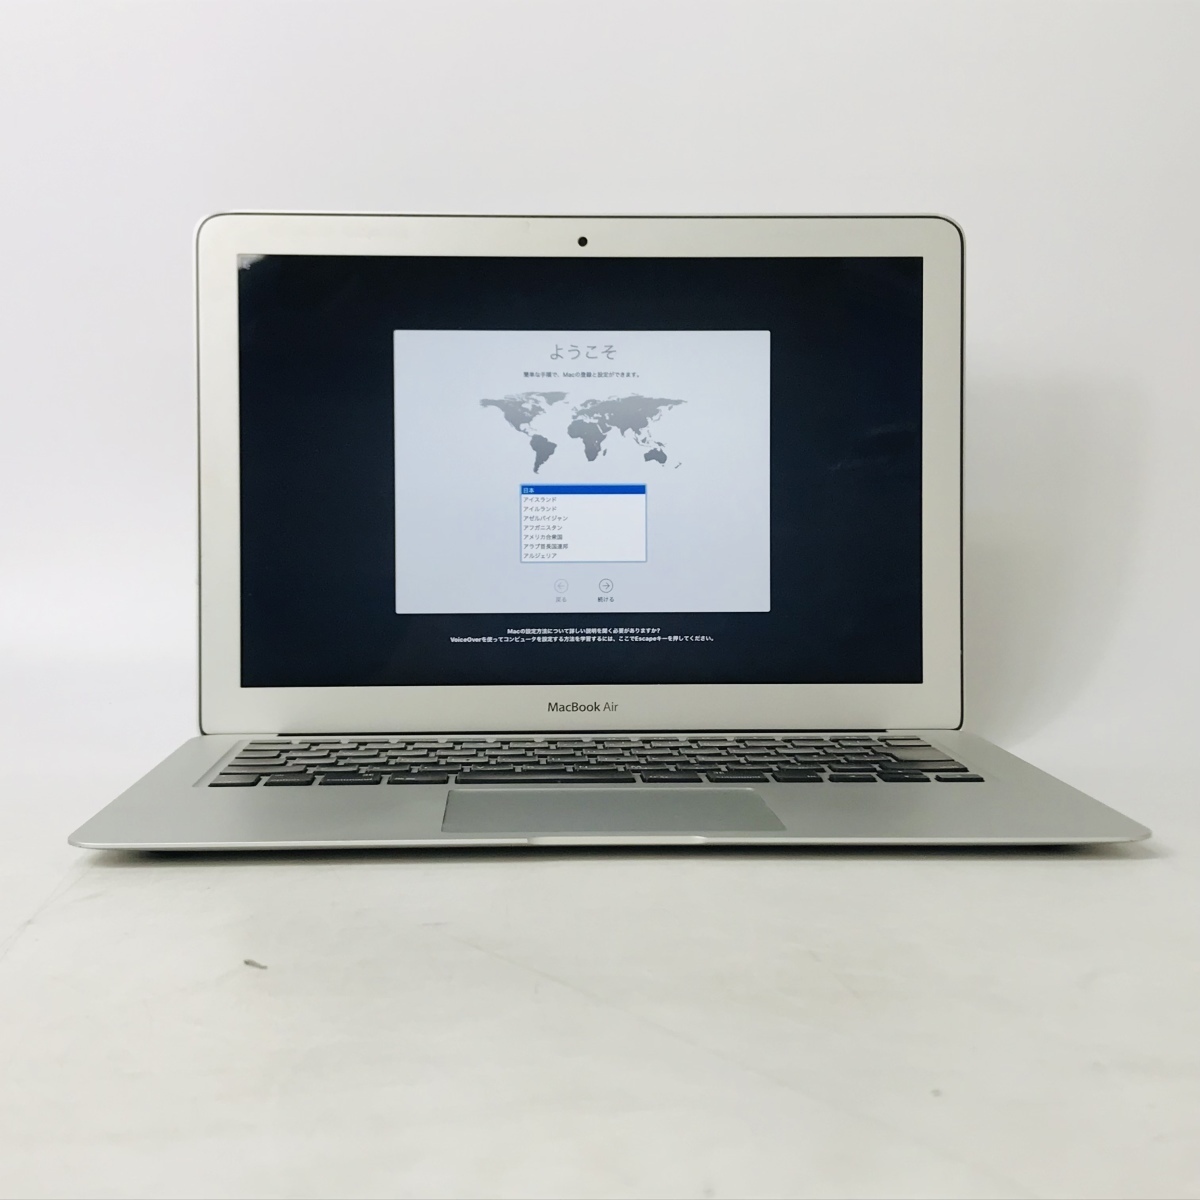 中古品 APPLE MacBook Air MD760J/A - zimazw.org